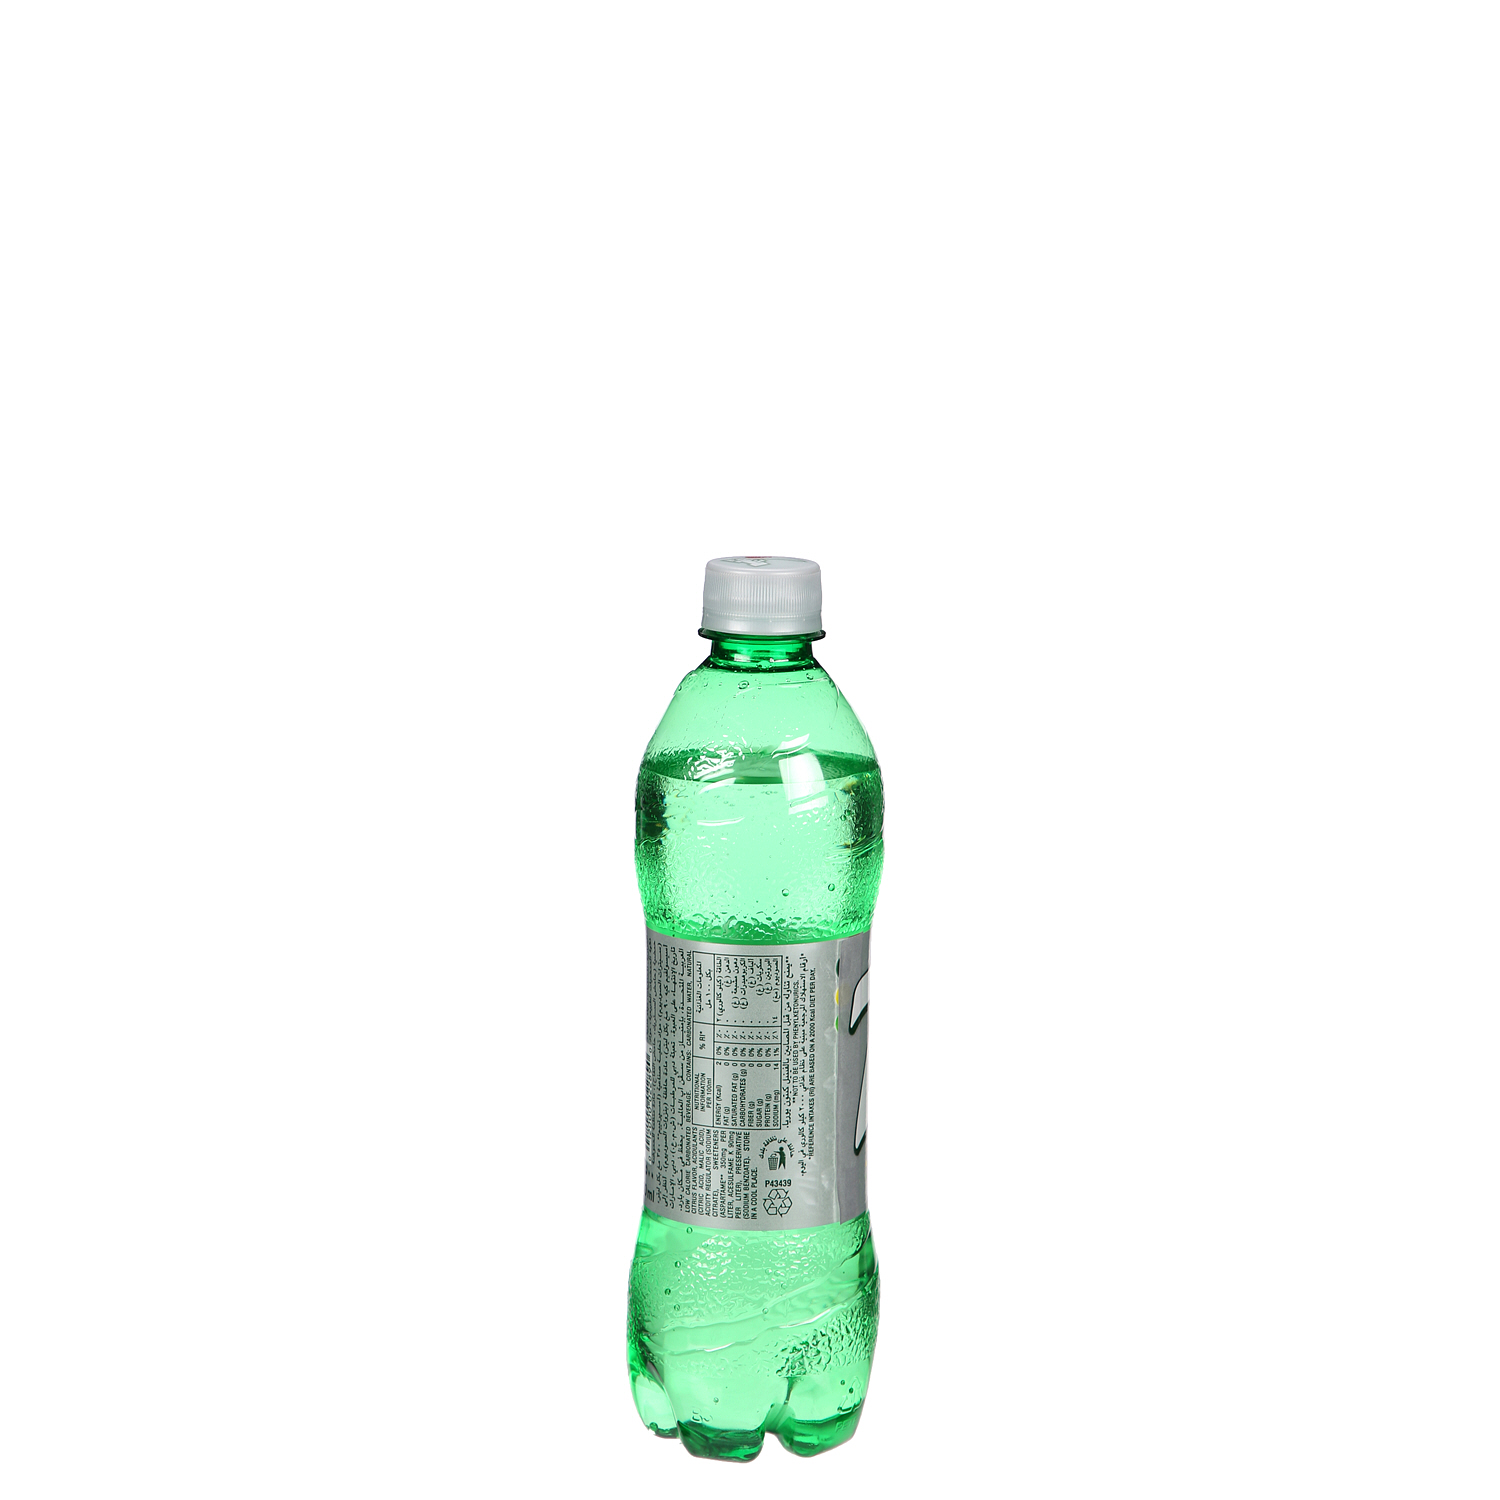 7UP Diet Plastic Bottle 500ml